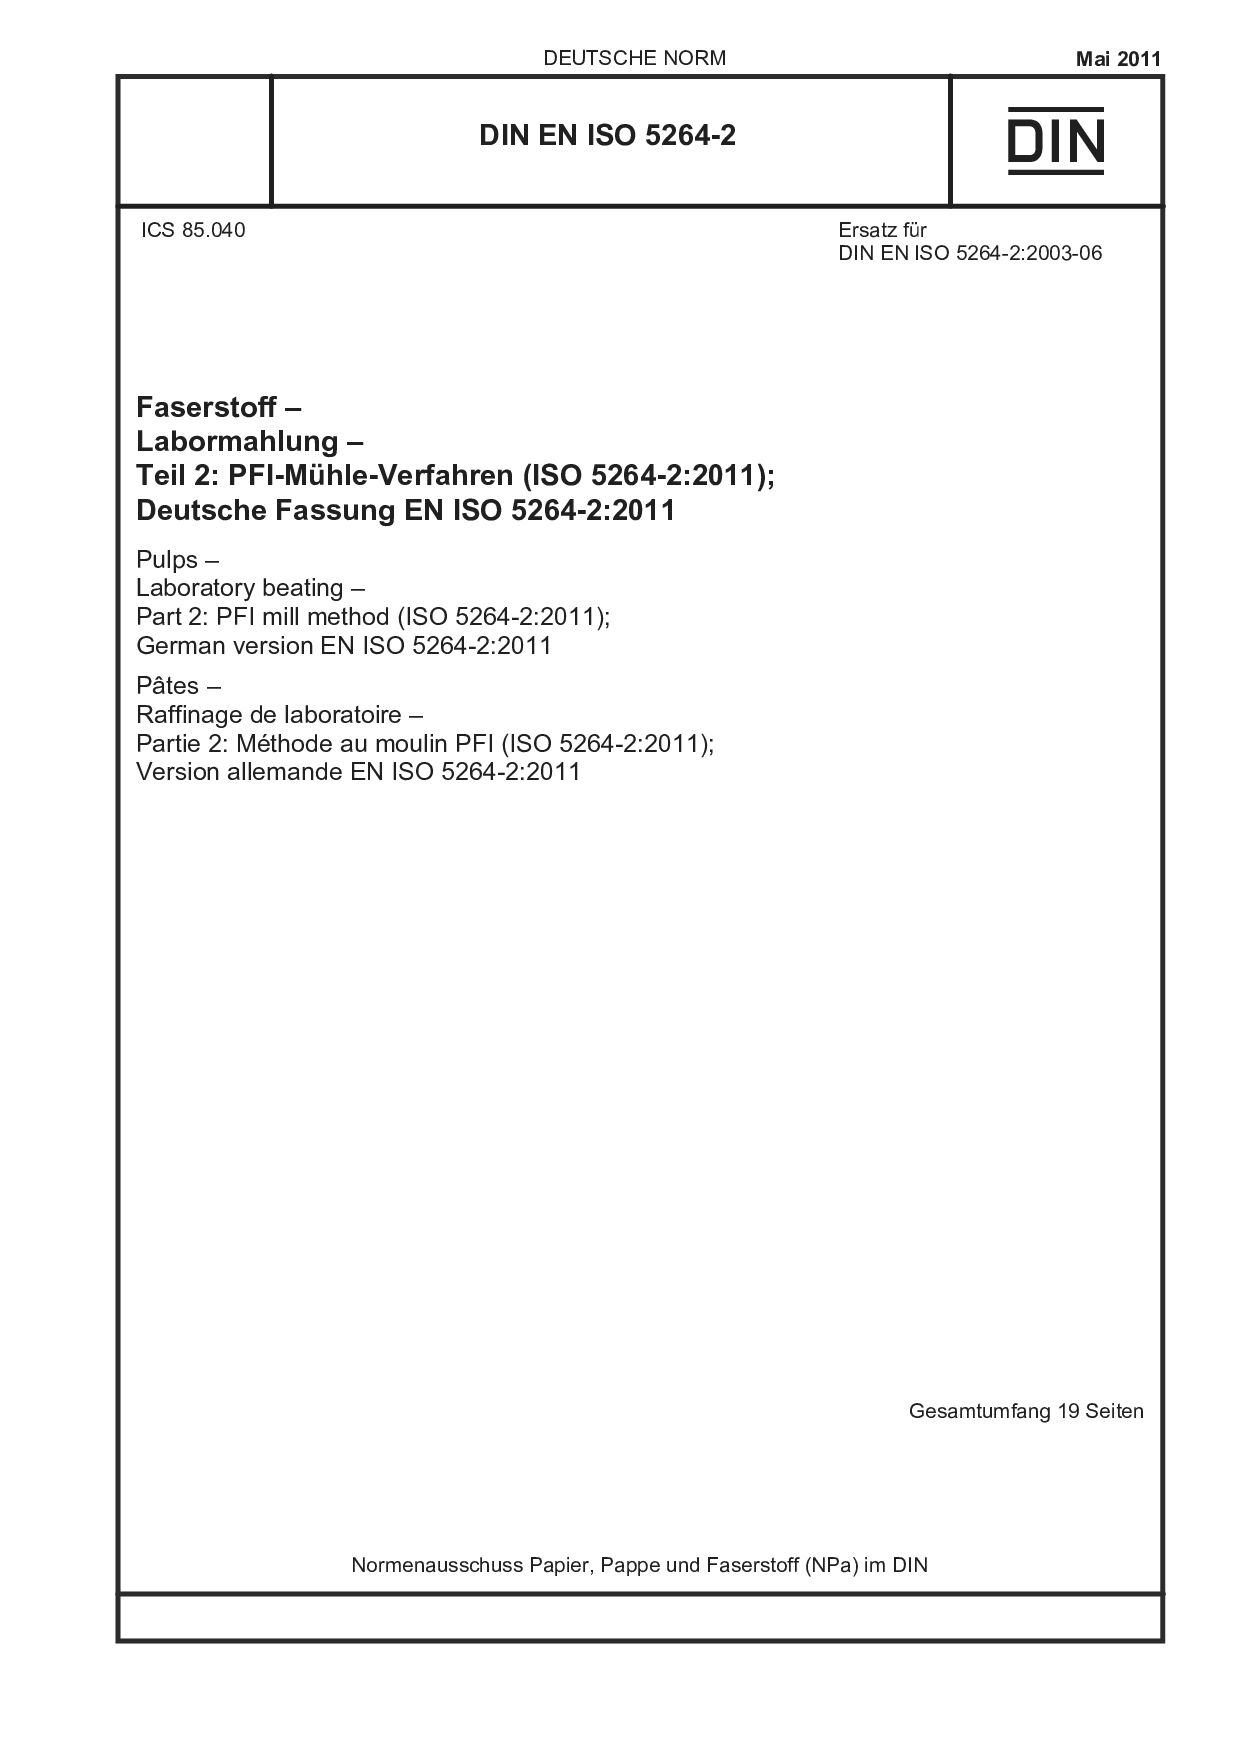 DIN EN ISO 5264-2:2011